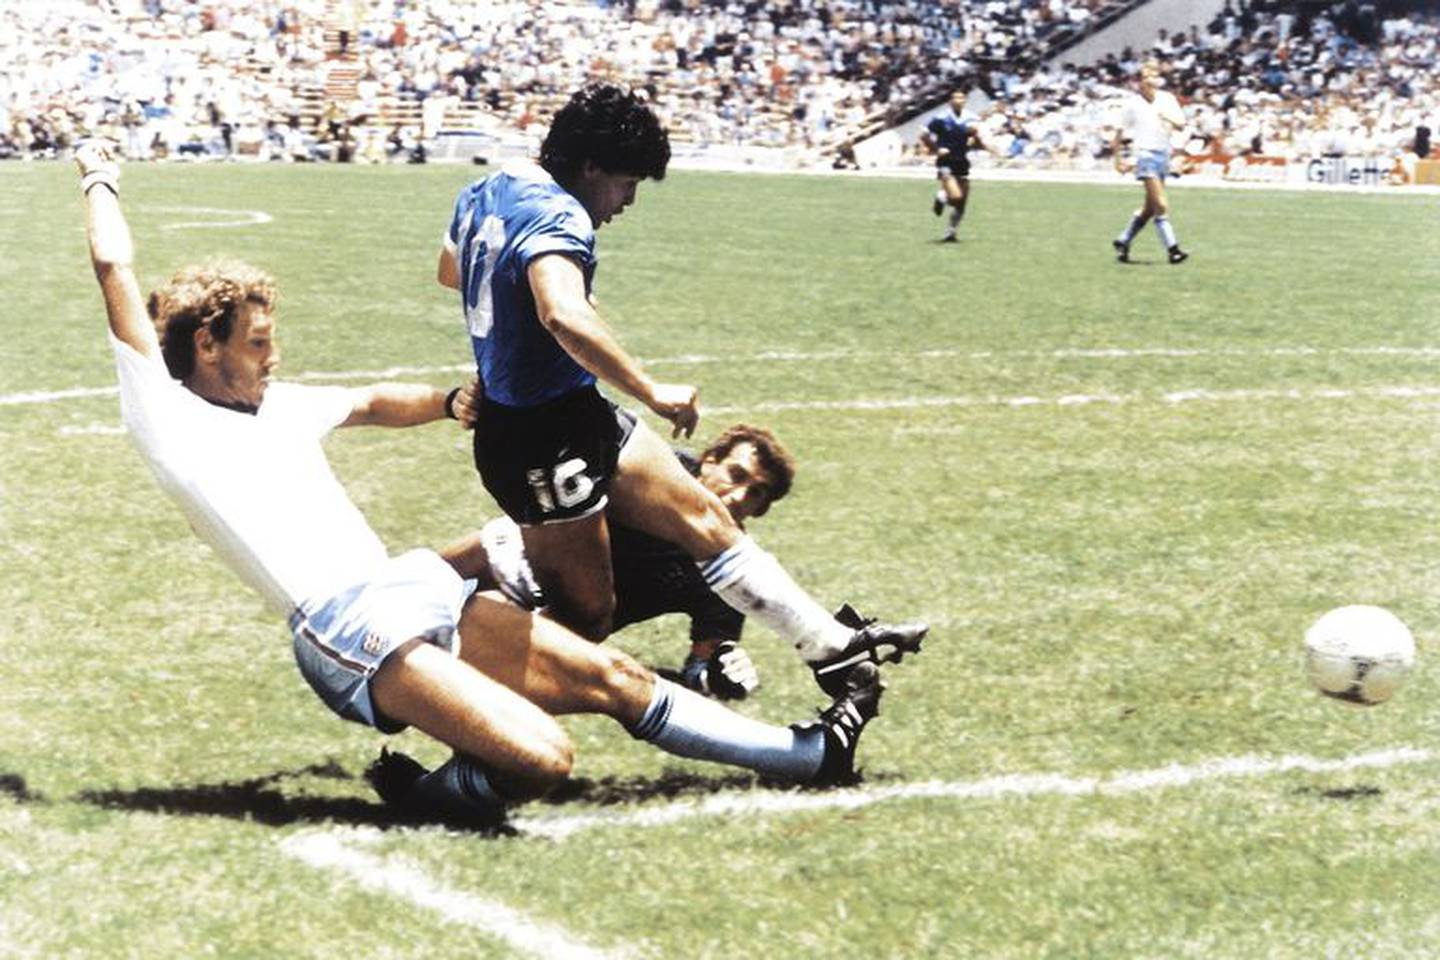 El segundo gol de Maradona a Inglaterra en el mundial de 1986, tras correr más de 50 metros (El Grafico - Getty Images South America)dfd